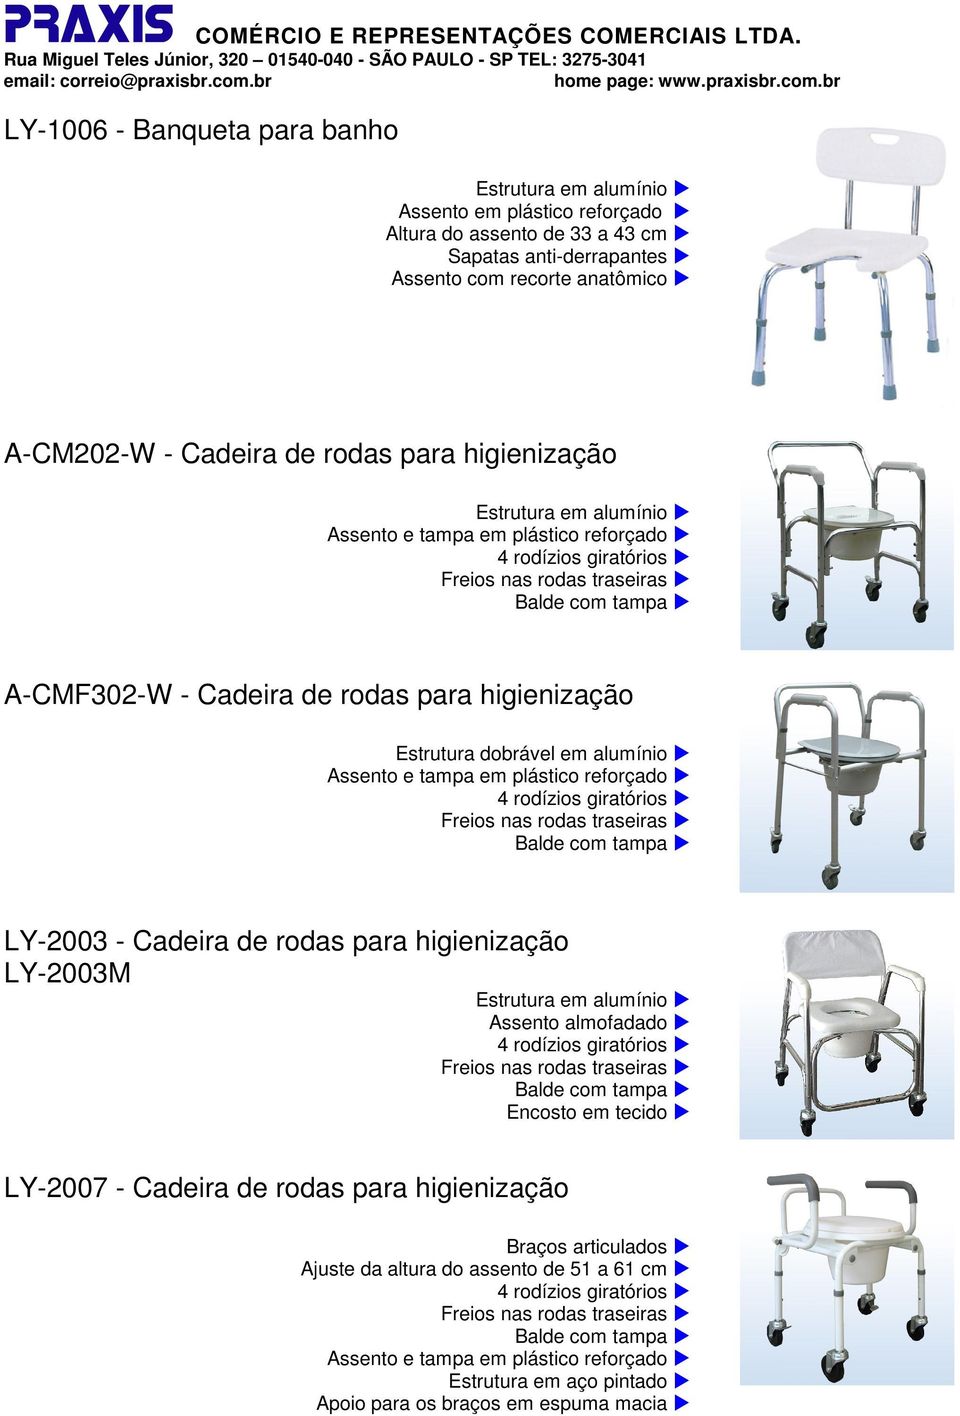 Cadeira de rodas para higienização LY-2003M Assento almofadado Encosto em tecido LY-2007 - Cadeira de rodas para